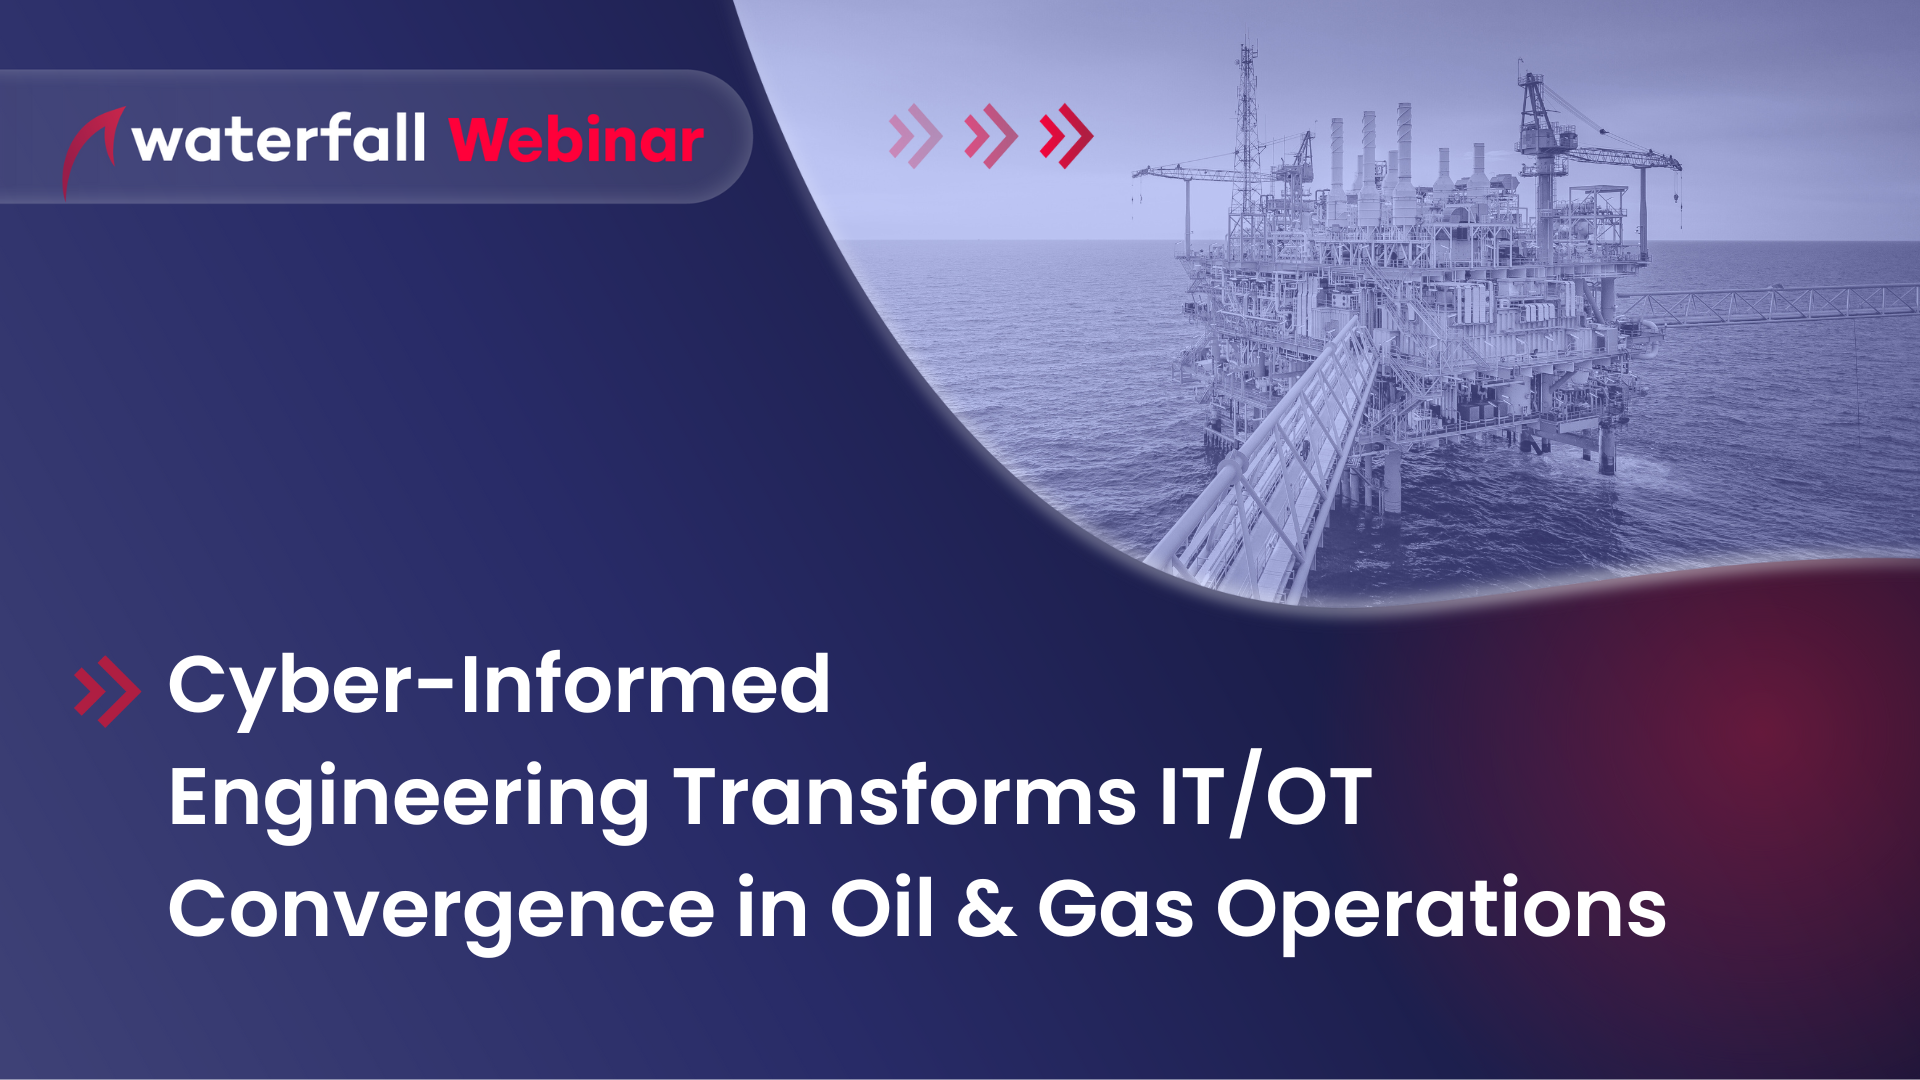 Oil & Gas Webinar